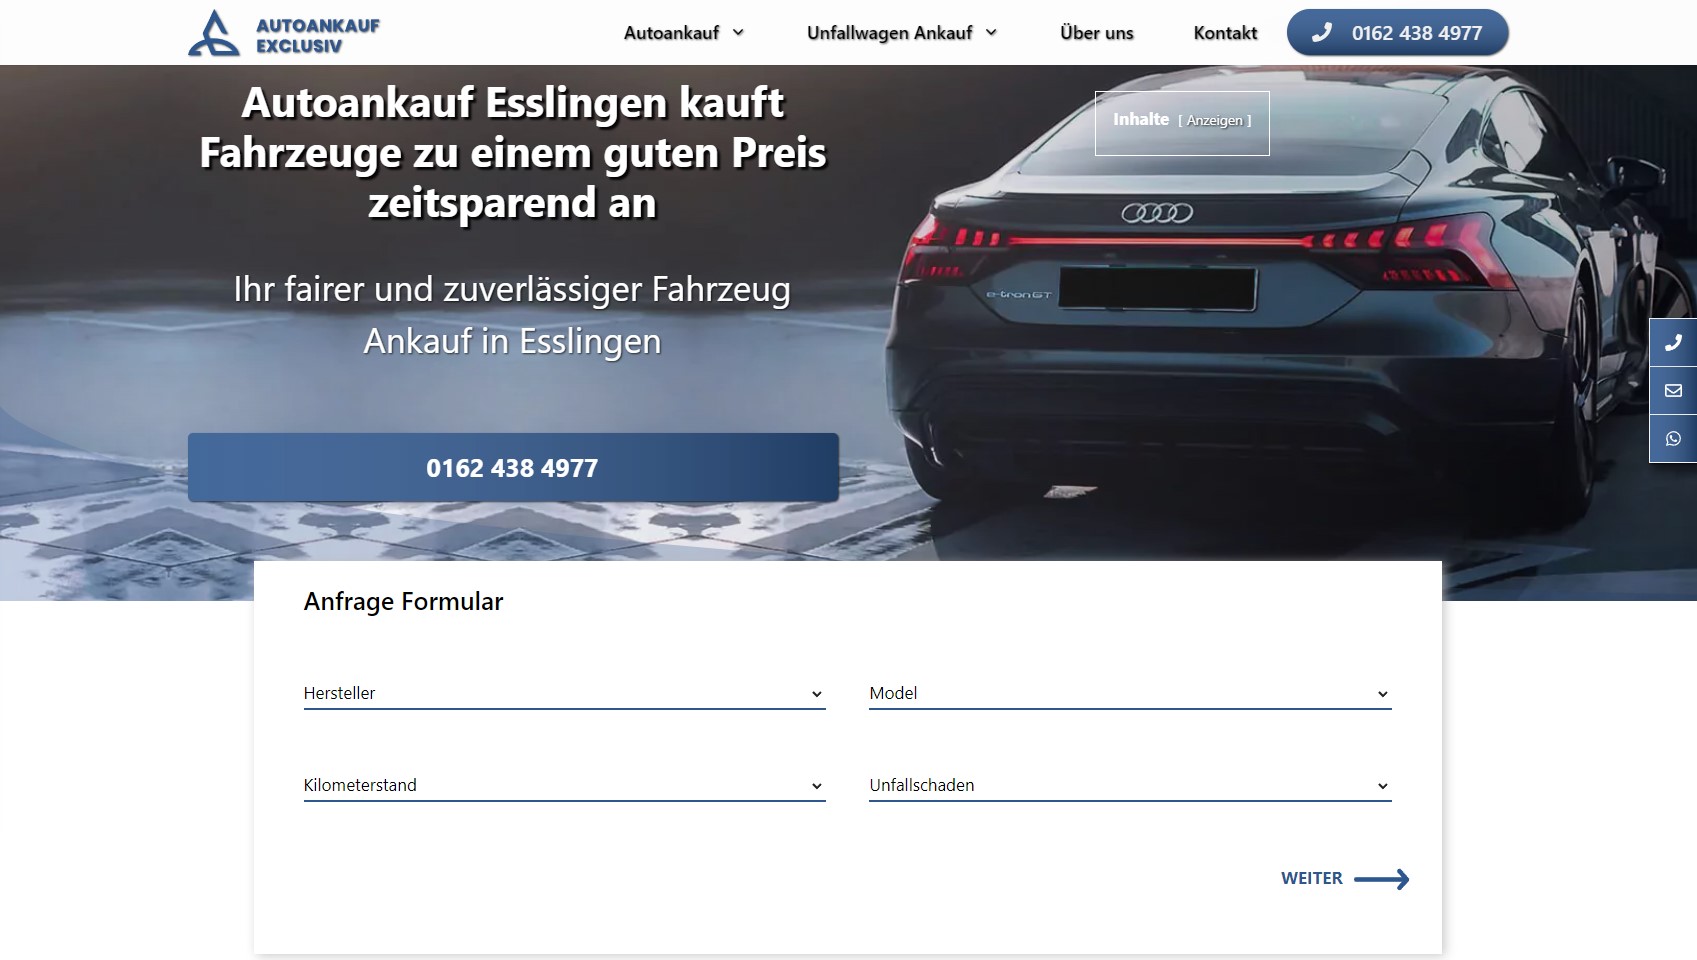 Fahrzeug Ankauf in Esslingen: Autoankauf Exclusiv